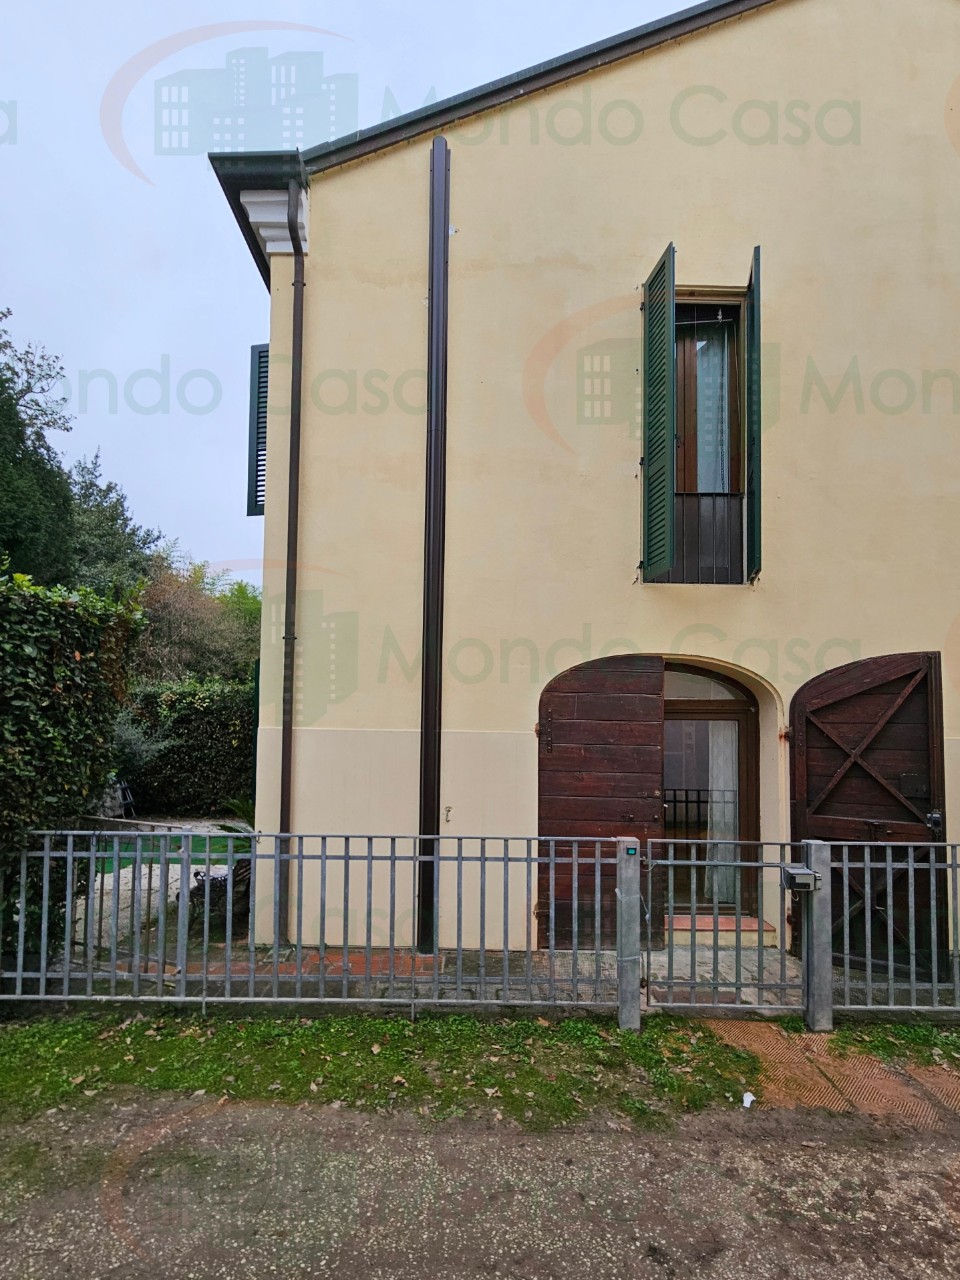 Villetta a schiera angolare in vendita a San Bartolo, Ravenna (RA)